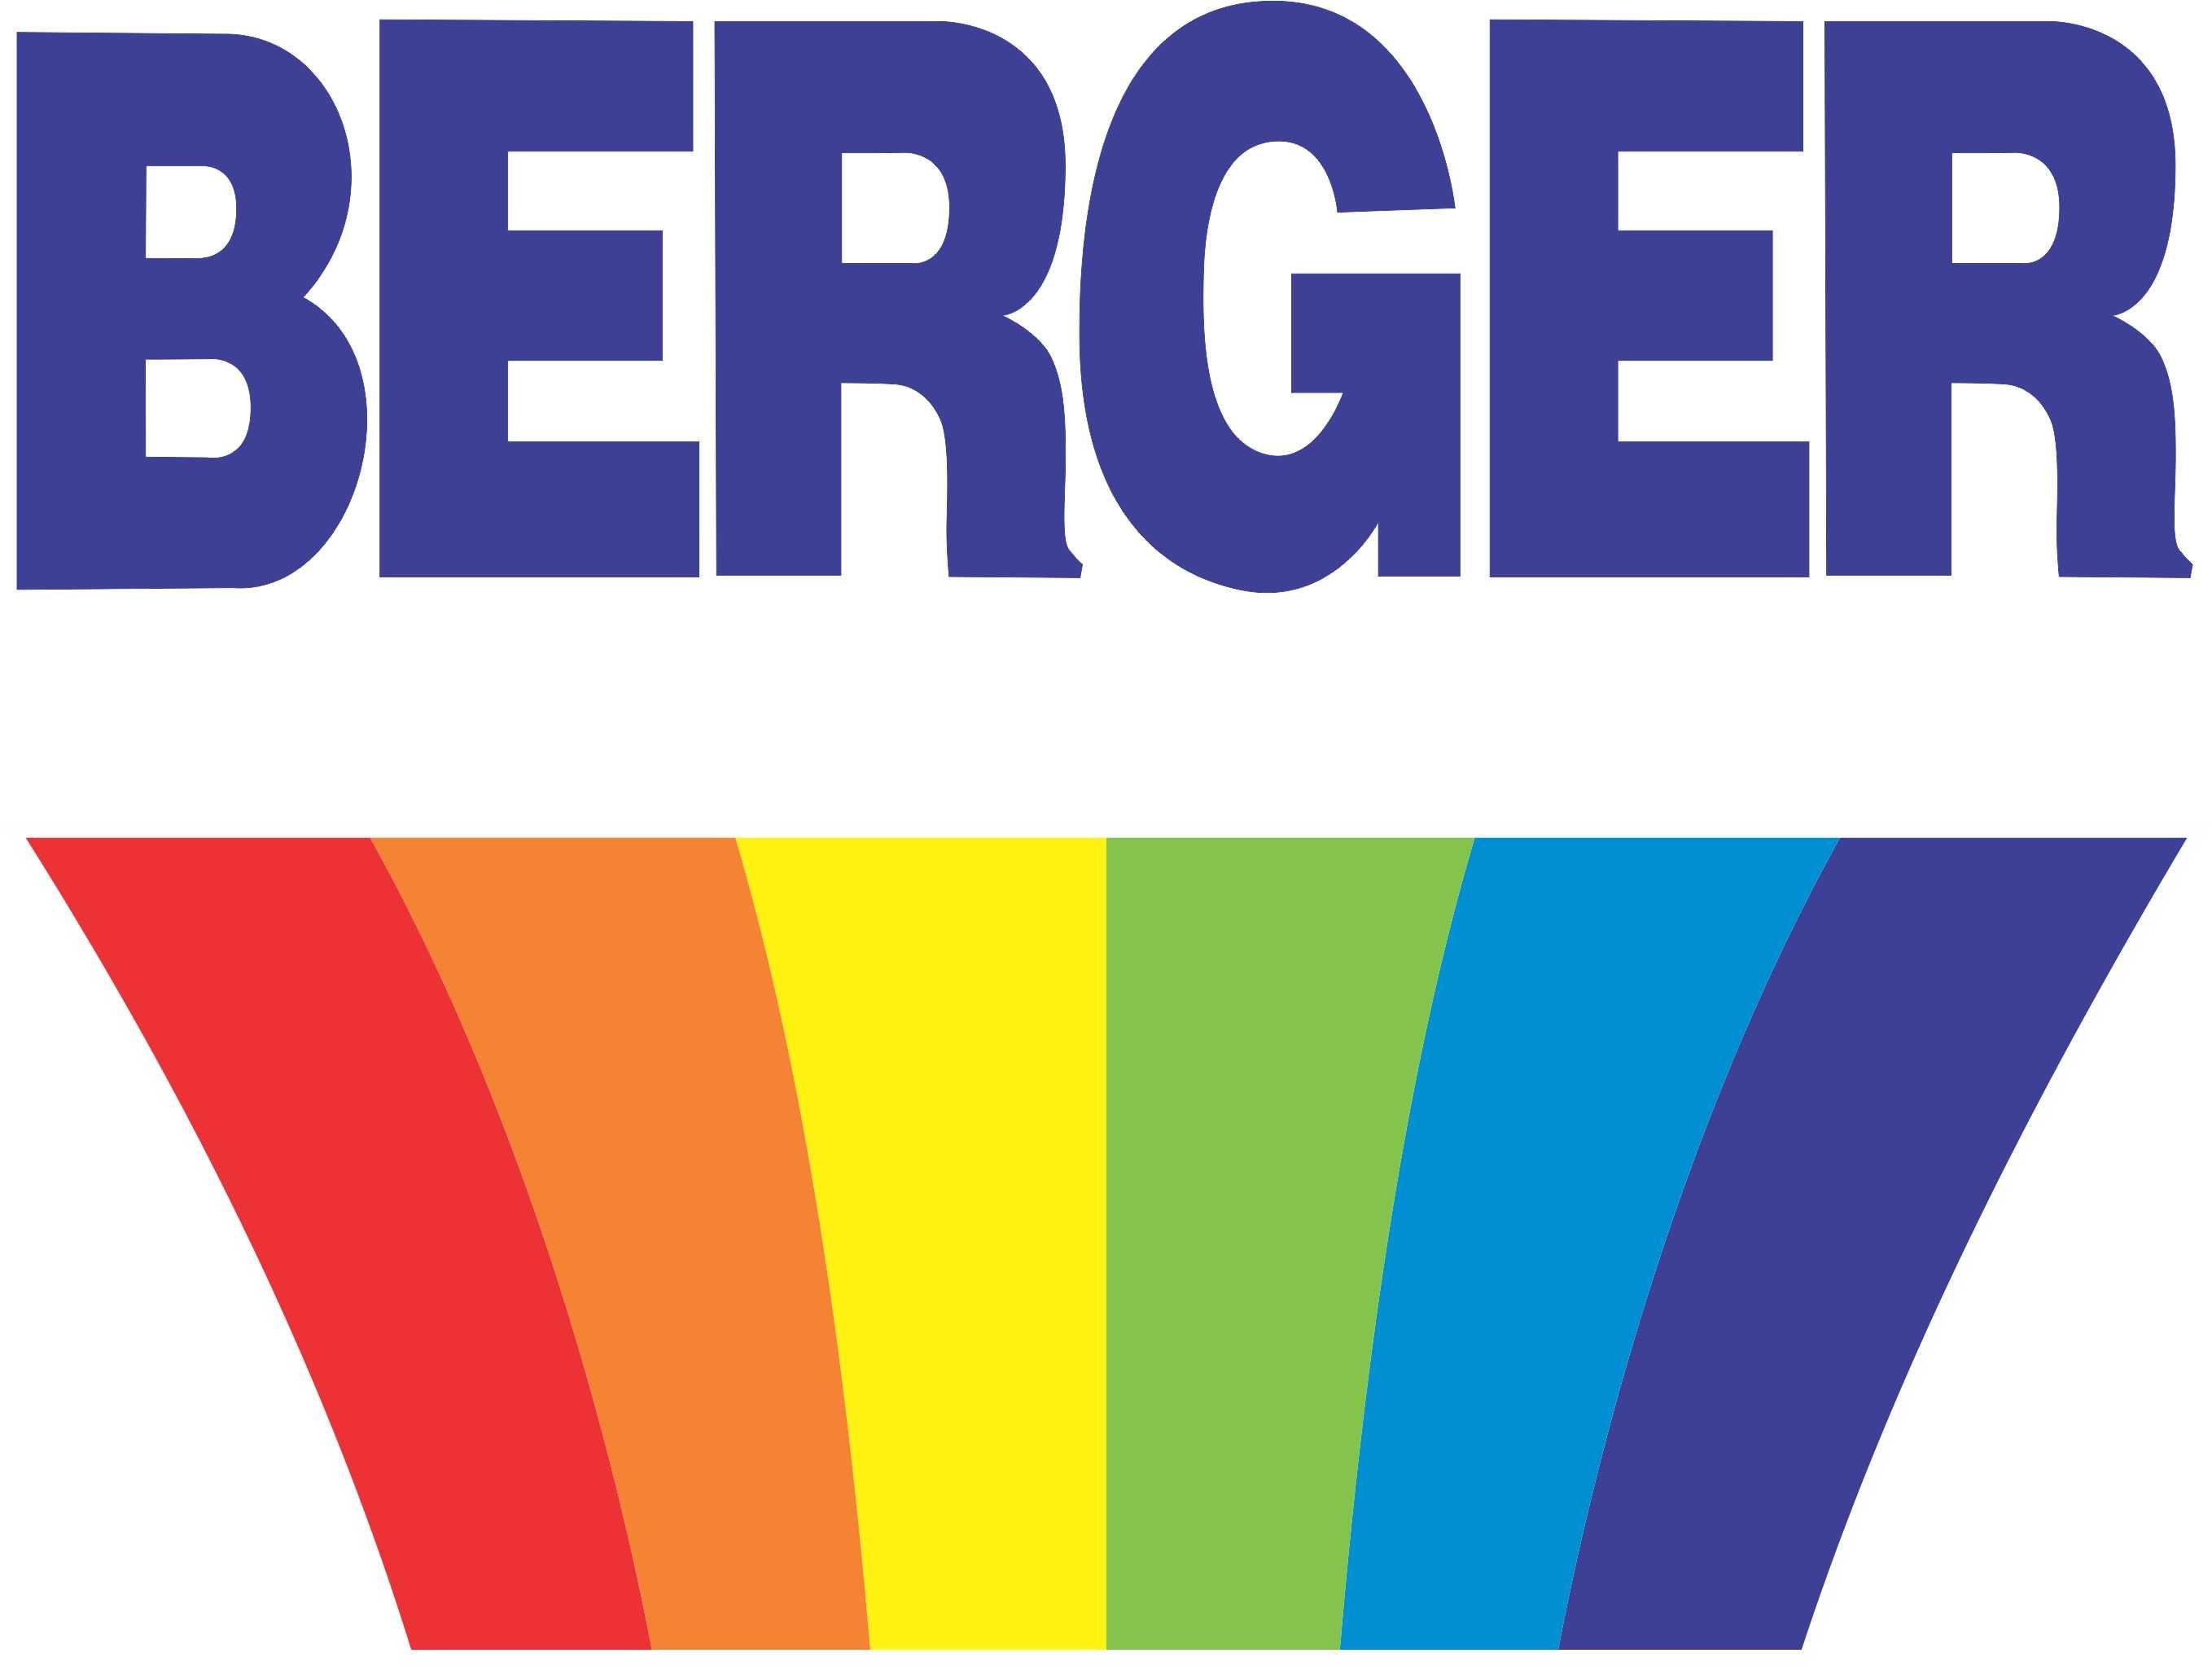 Berger Logo - Berger Paints Jamaica